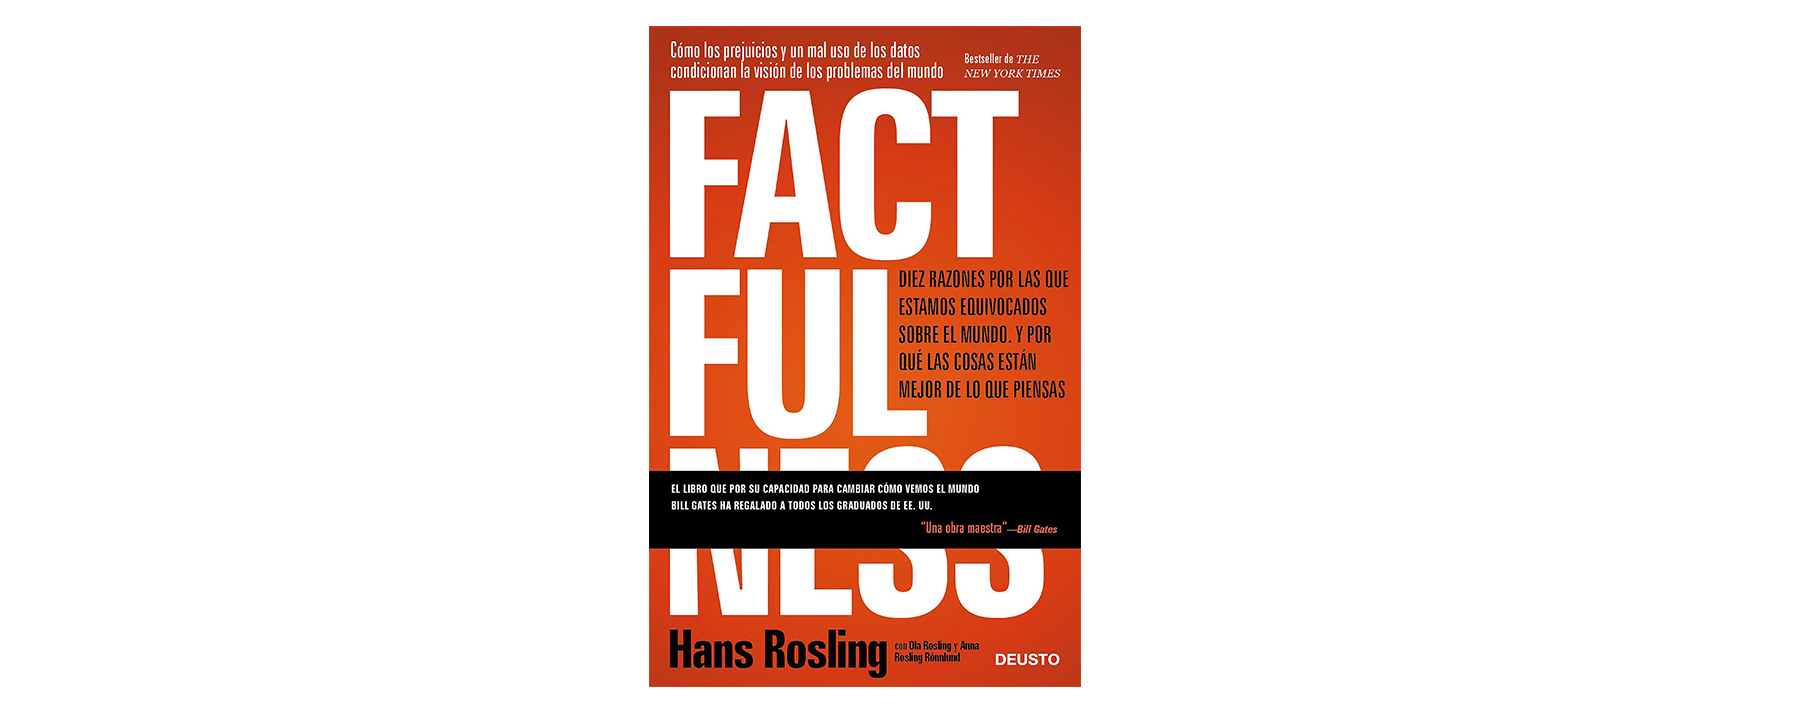 Hans Rosling aﬁrma que tenemos diez instintos que distorsionan nuestra visión. Él busca que cambies la manera de ver el mundo y que eso te permita responder a crisis y oportunidades futuras.